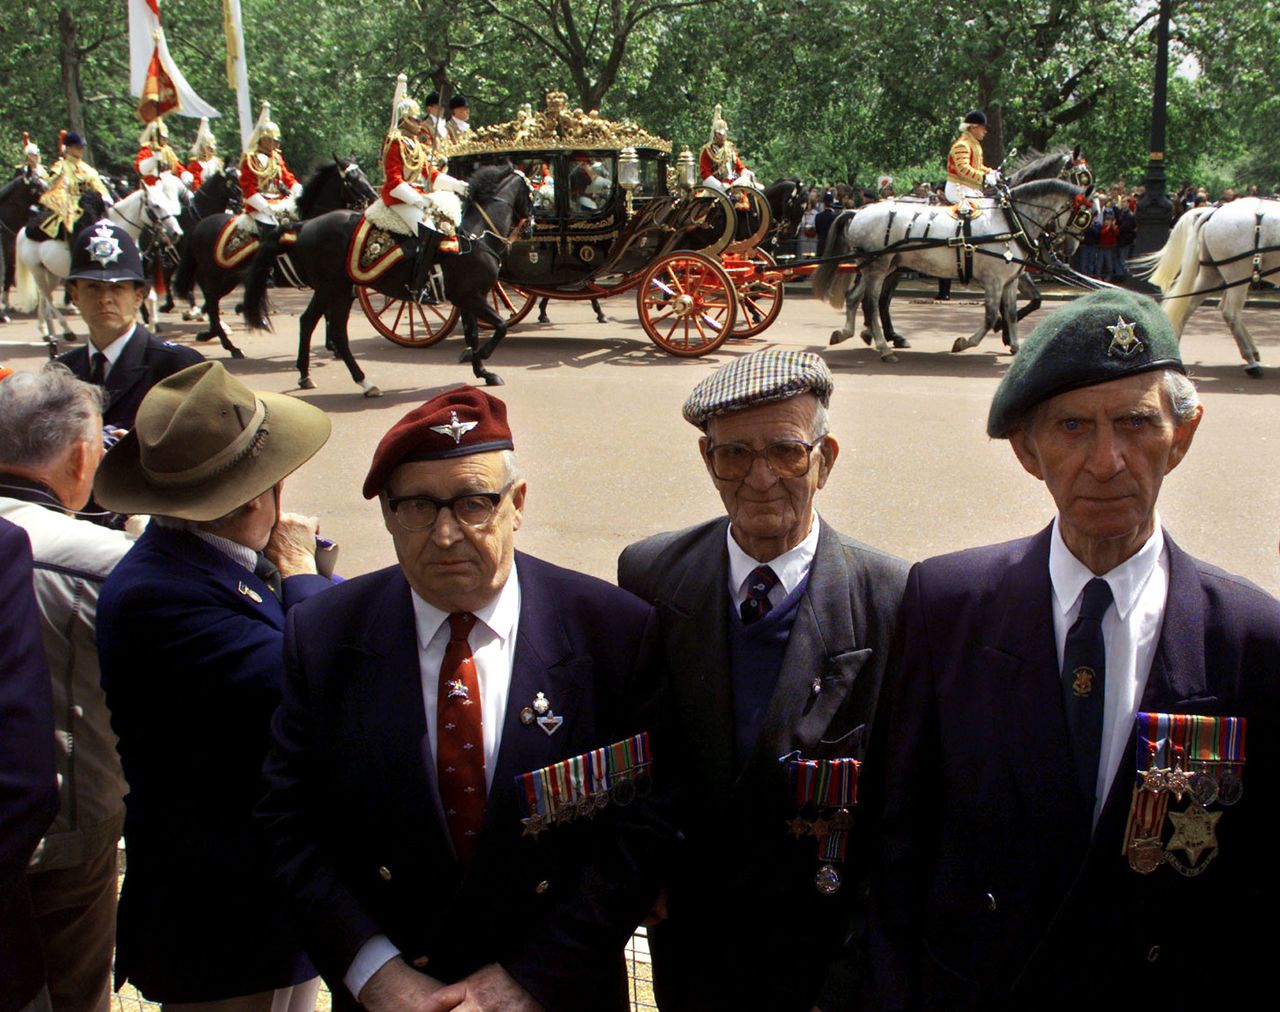 مجموعة من قدامى المحاربين البريطانيين يعطون ظهورهم لموكب الامبراطور الياباني أثناء توجهه إلى قصر باكنغهام في مايو/ أيار 1998 في لندن. © رويترز.